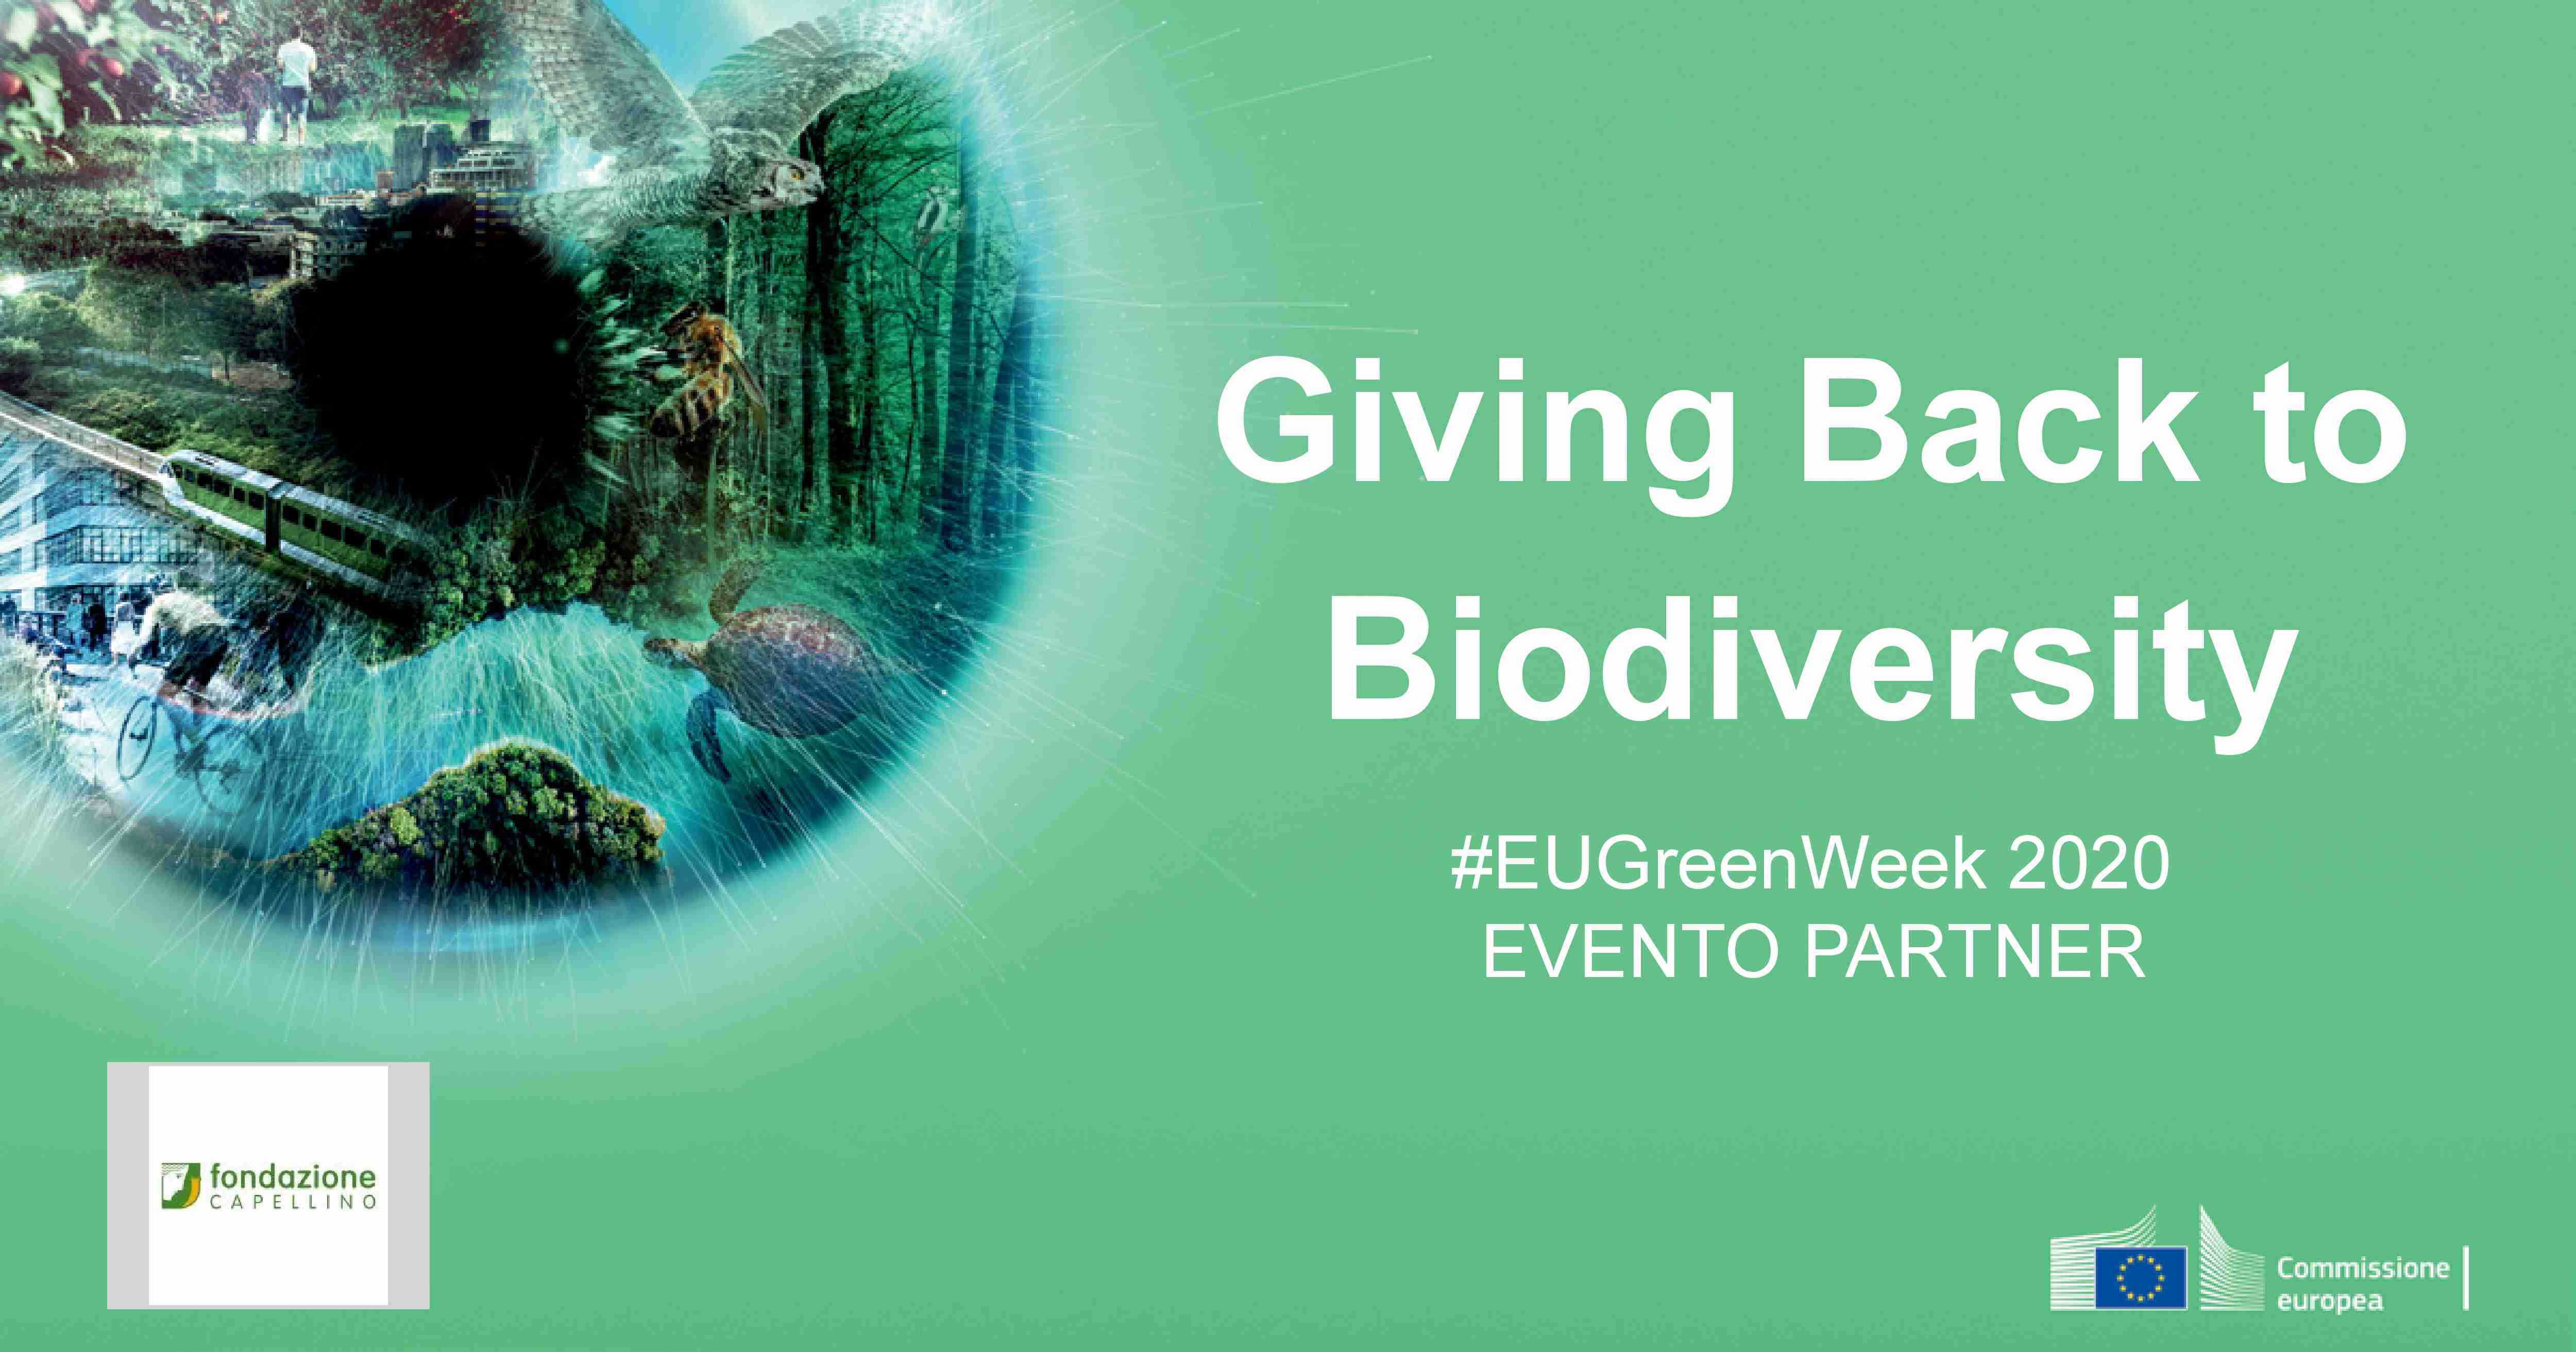 La Fondazione Capellino partner della Green Week 2020 con il webinar "Giving Back to Biodiversity"